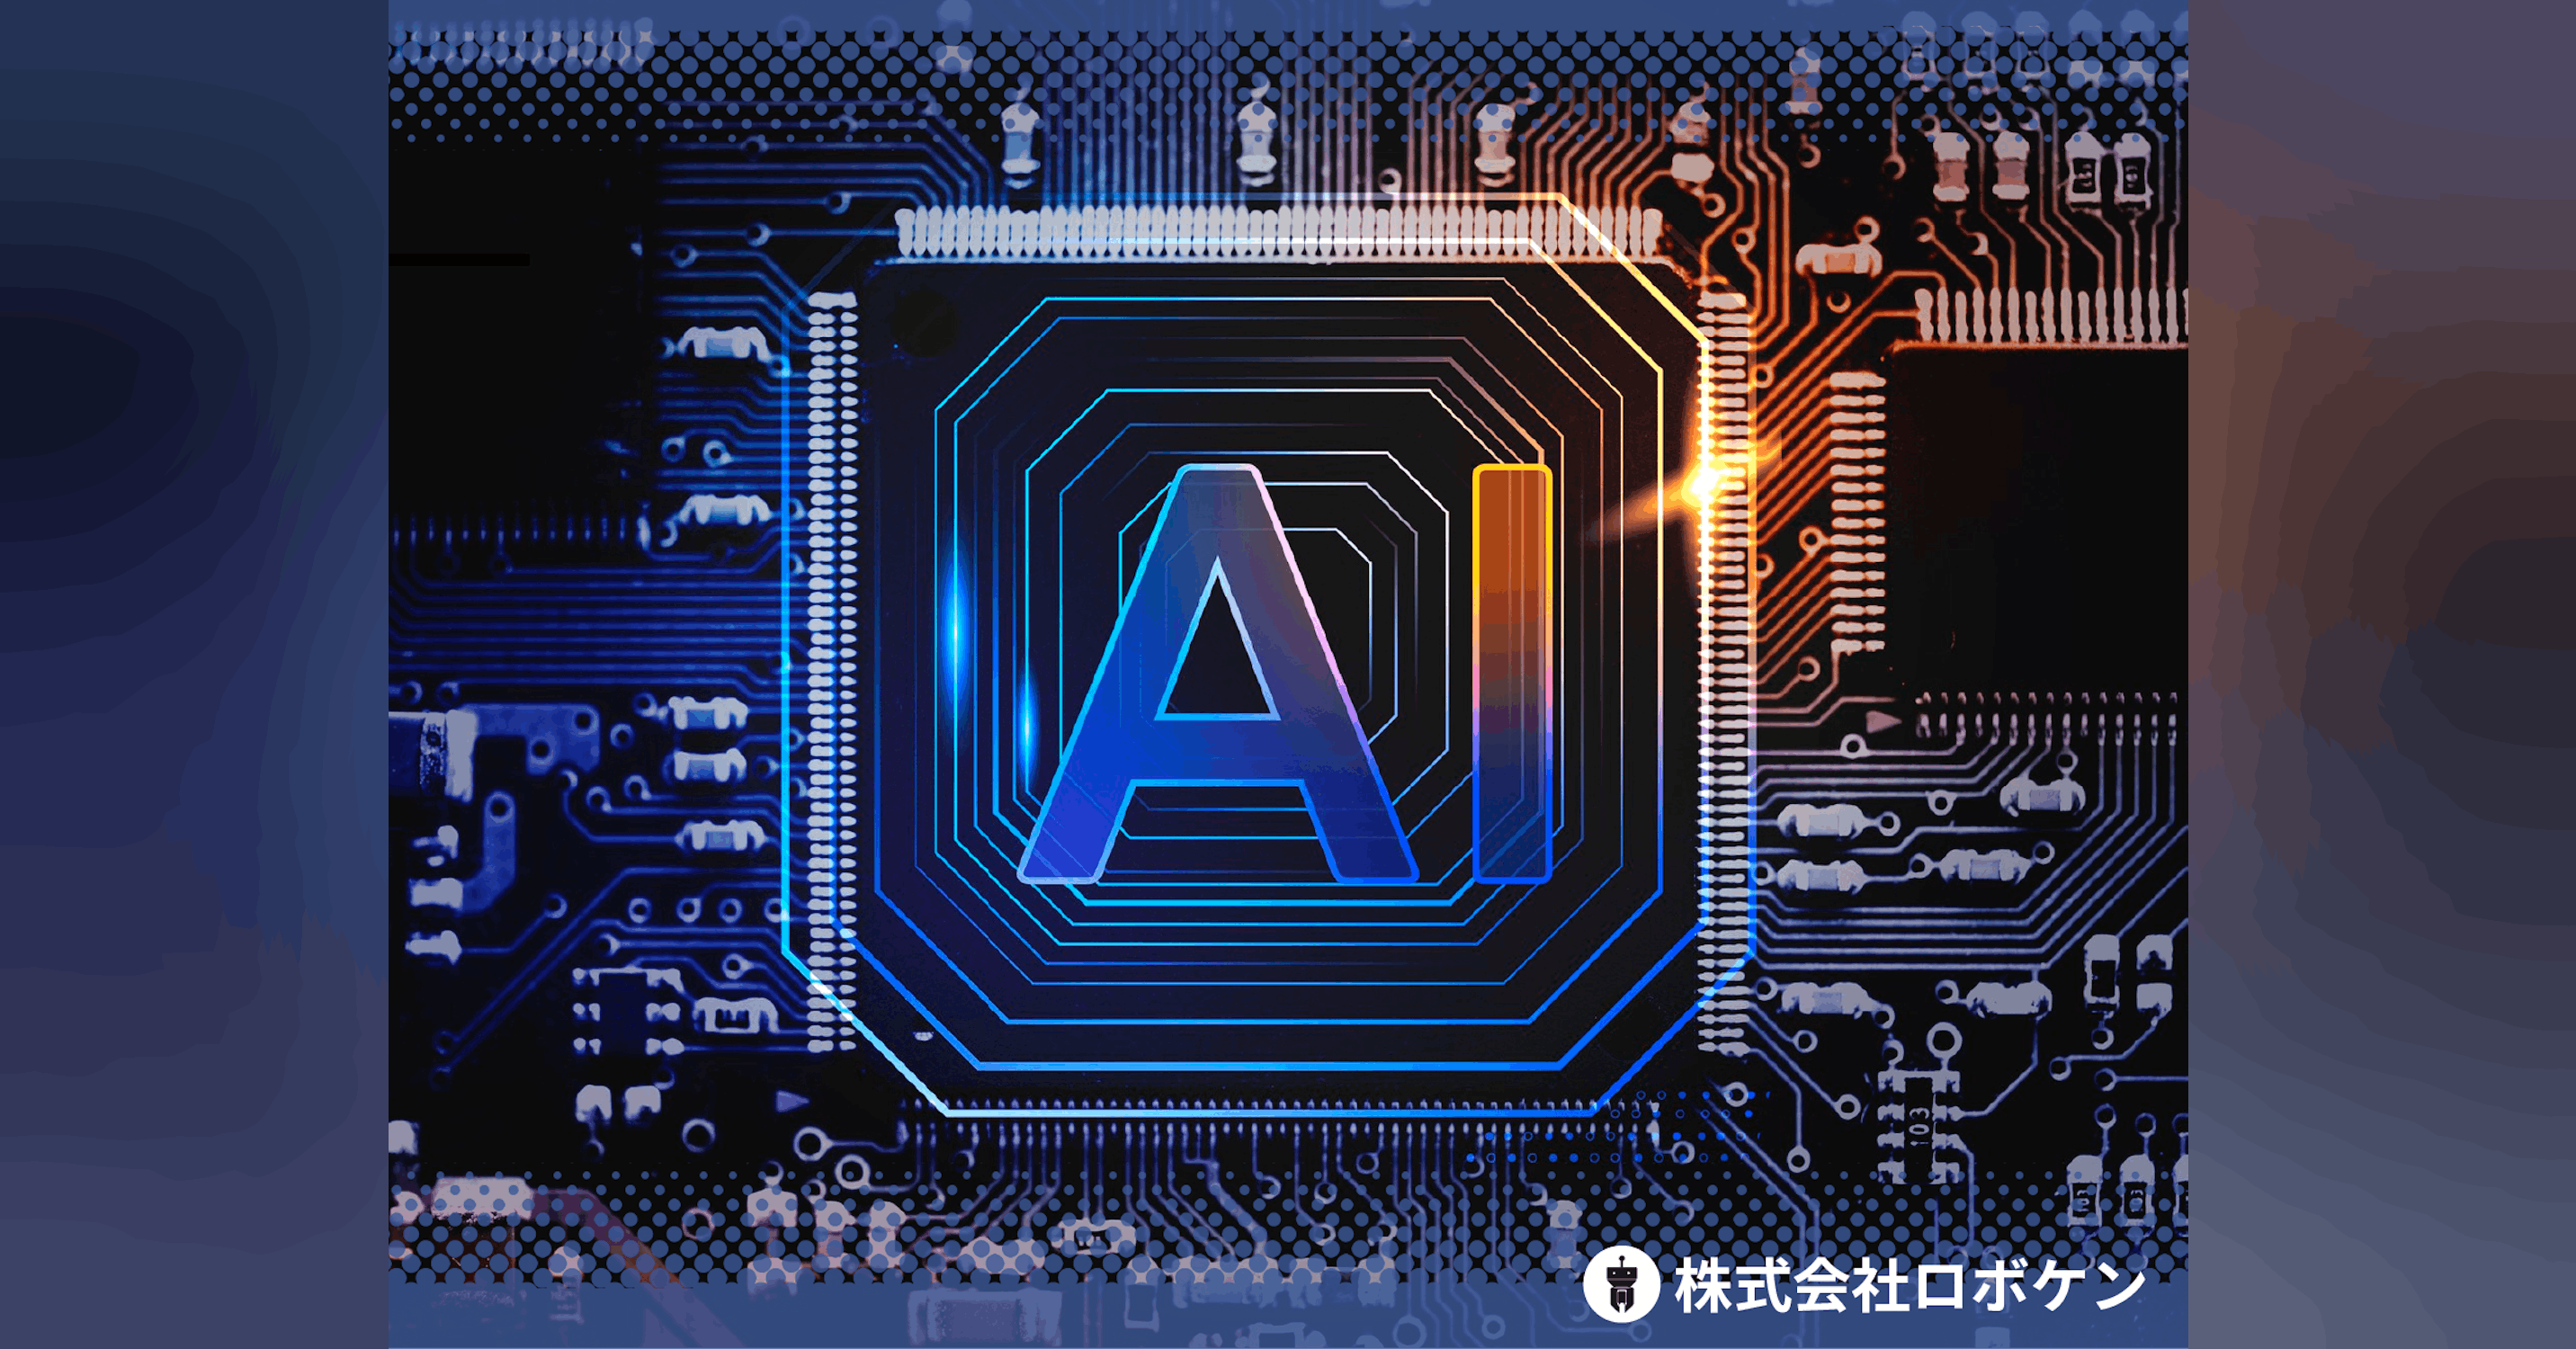 AIを活用した新技術創出プラットフォームを作り、研究開発における「アイデア出し」を支援します！